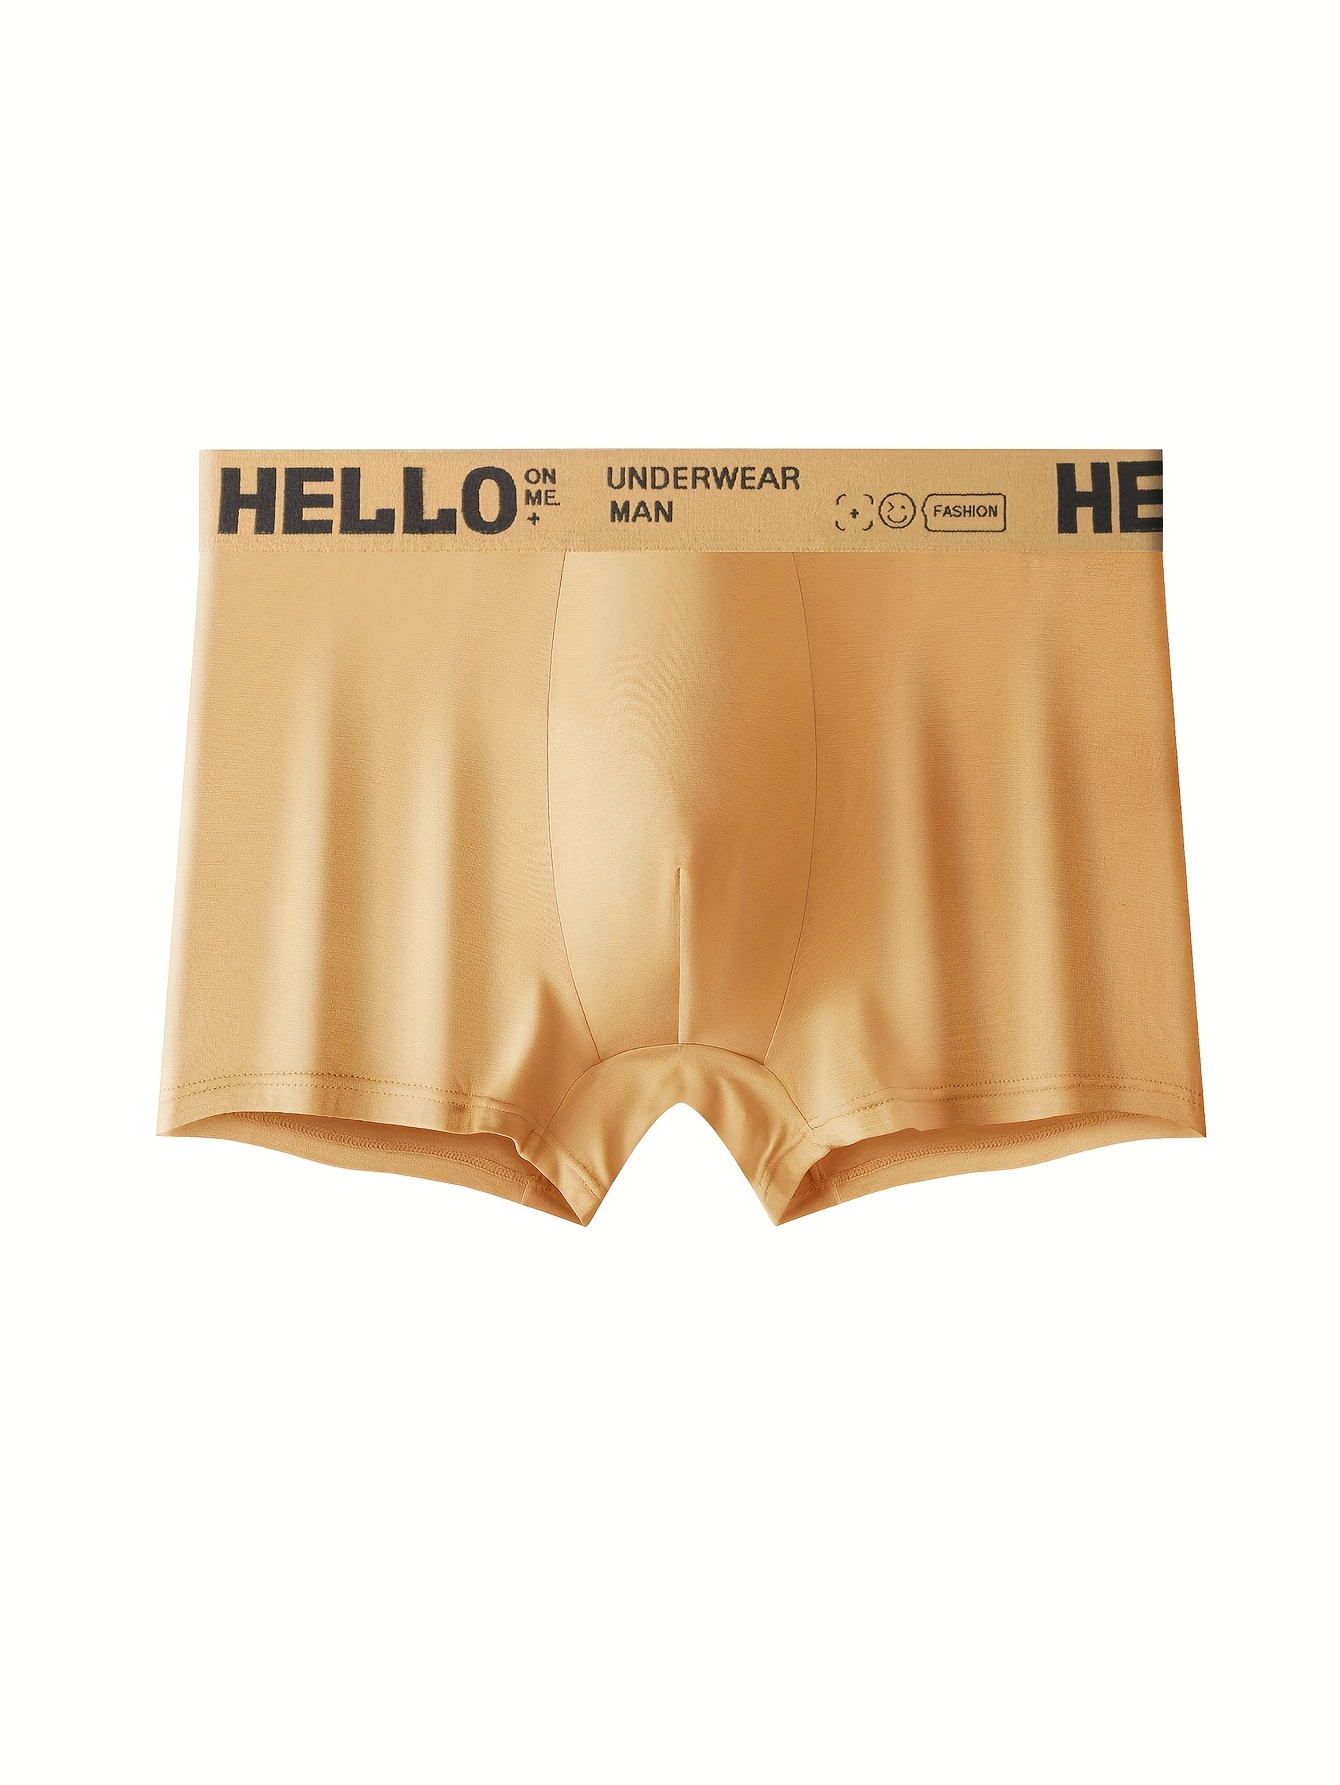 4pcs Men's Underwear Boxer Briefs, Comfortable Breathable Boxers Trunks  Letter HELLO Briefs